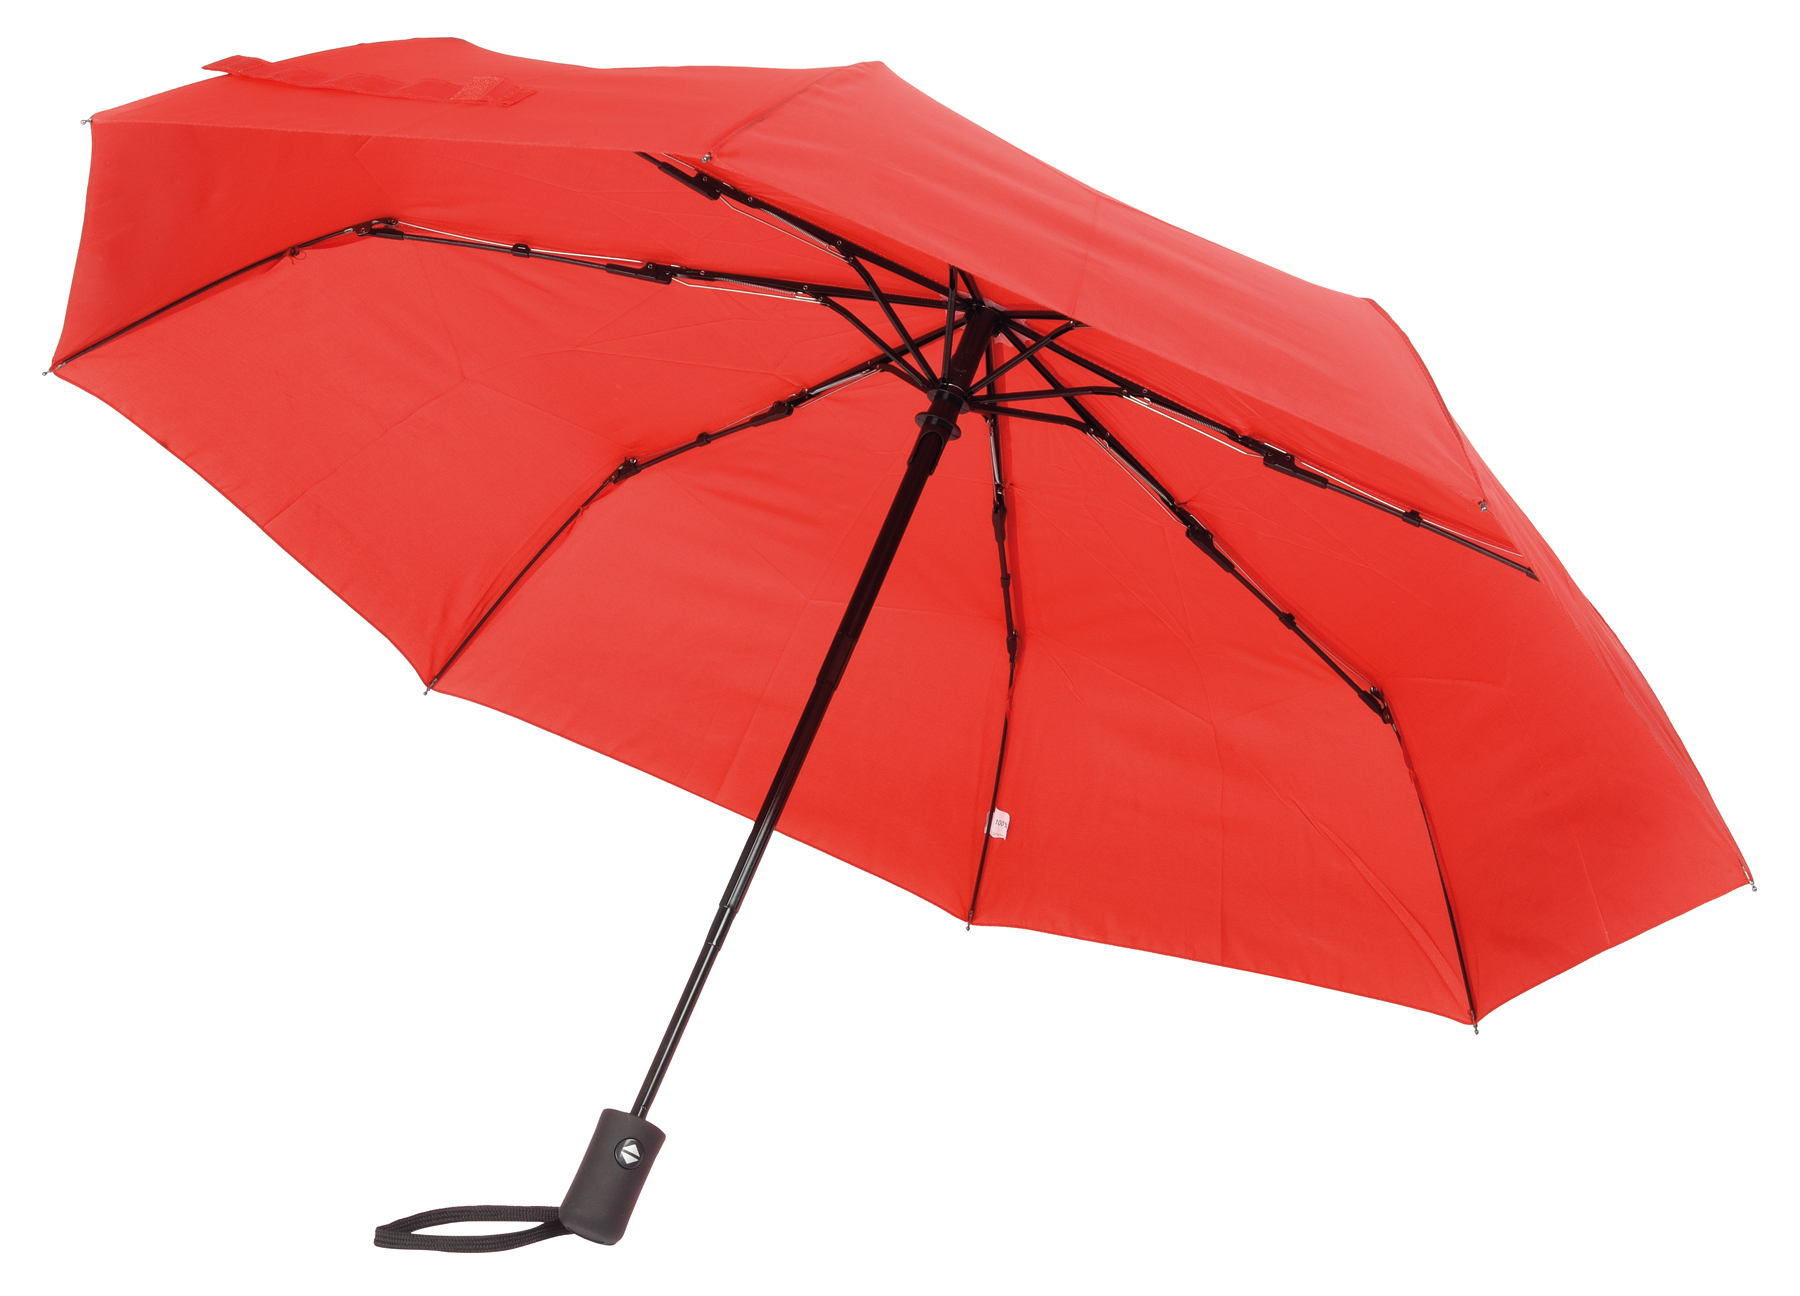 Automatický open/close větruvzdorný skládací polyesterový deštník PLOPP pouzdro v odpovídající barvě: 3dílná kovová konstrukce, žebra kombinace kov a sklolaminát, kovové špičky, pogumovaná rukojeť s poutkem, zapínání na suchý zip  - červená - foto